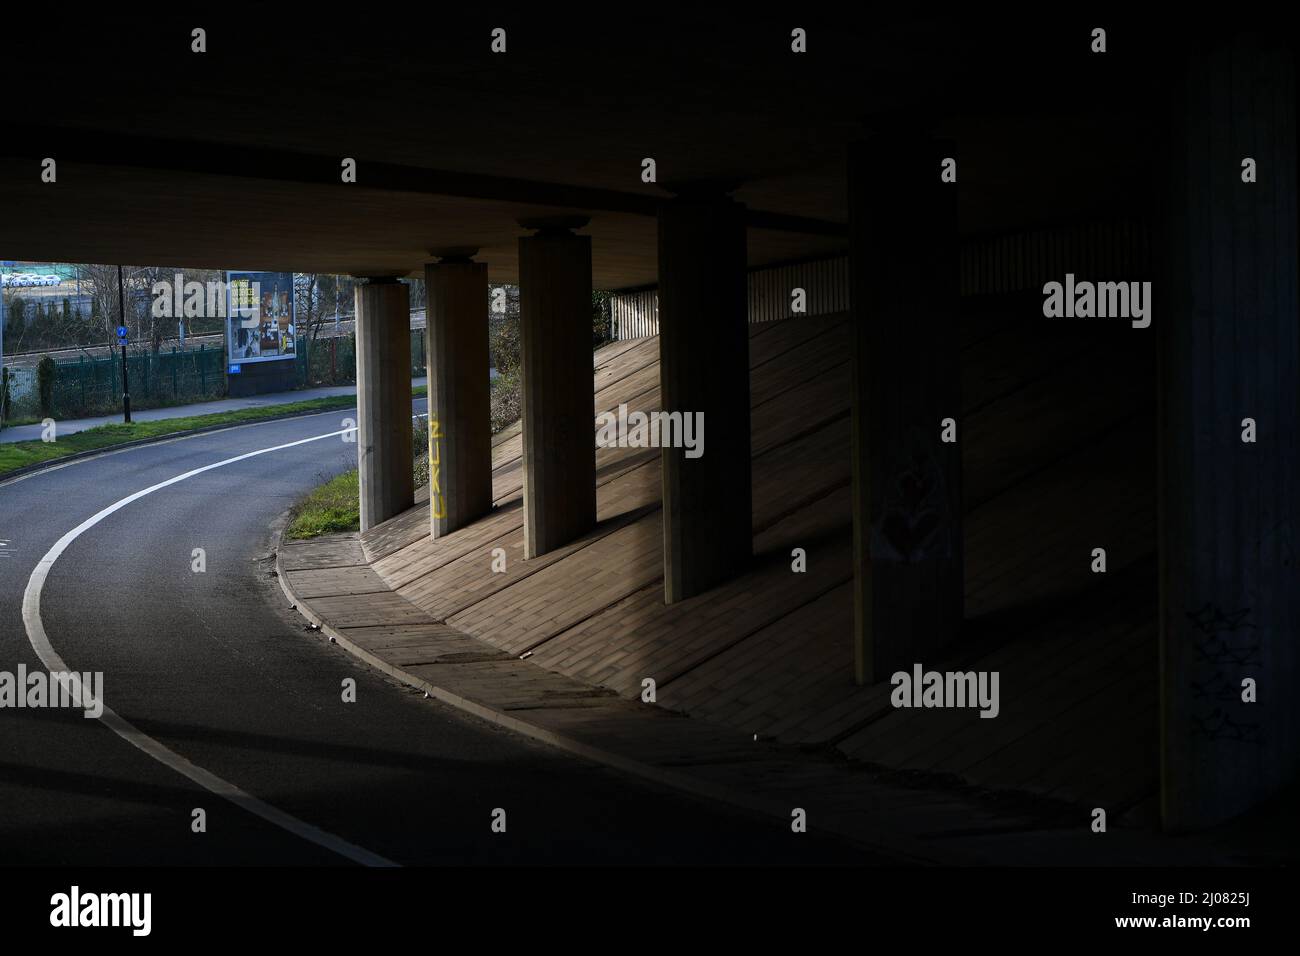 Eine leere Unterführung mit Straßenüberführung, die Stützsäulen und Straßen in Schatten und Licht zeigt. Stockfoto